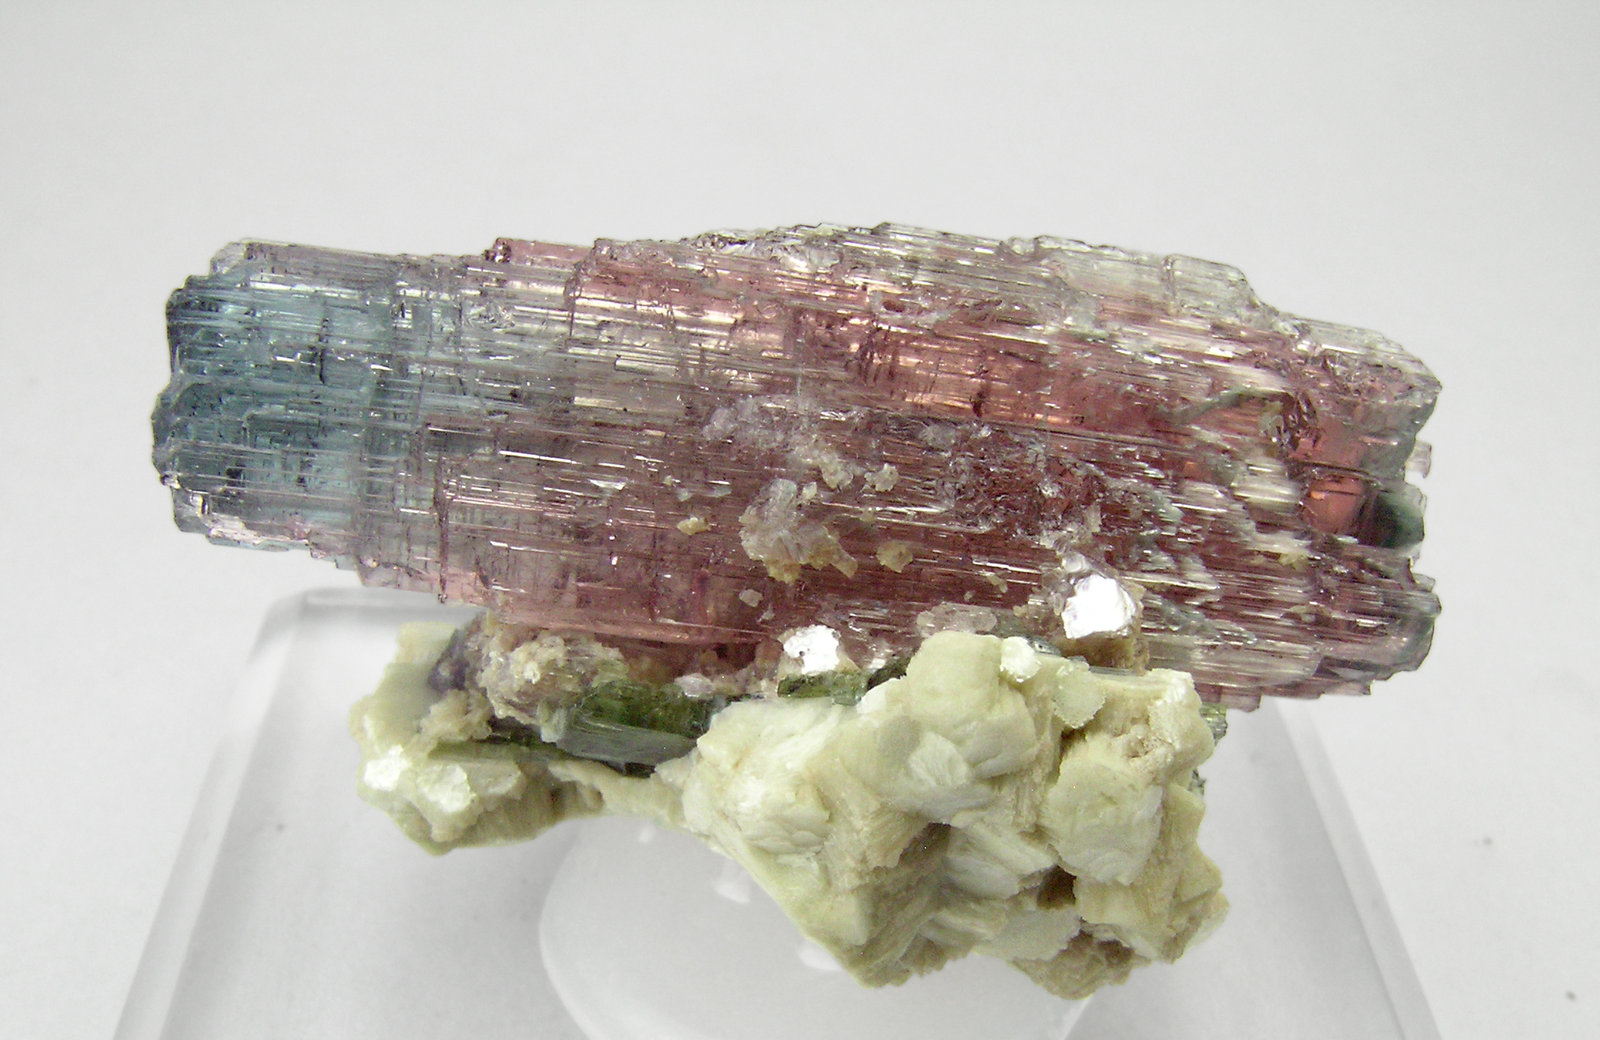 specimens/s_imagesP9/Elbaite-NA29P9r.jpg